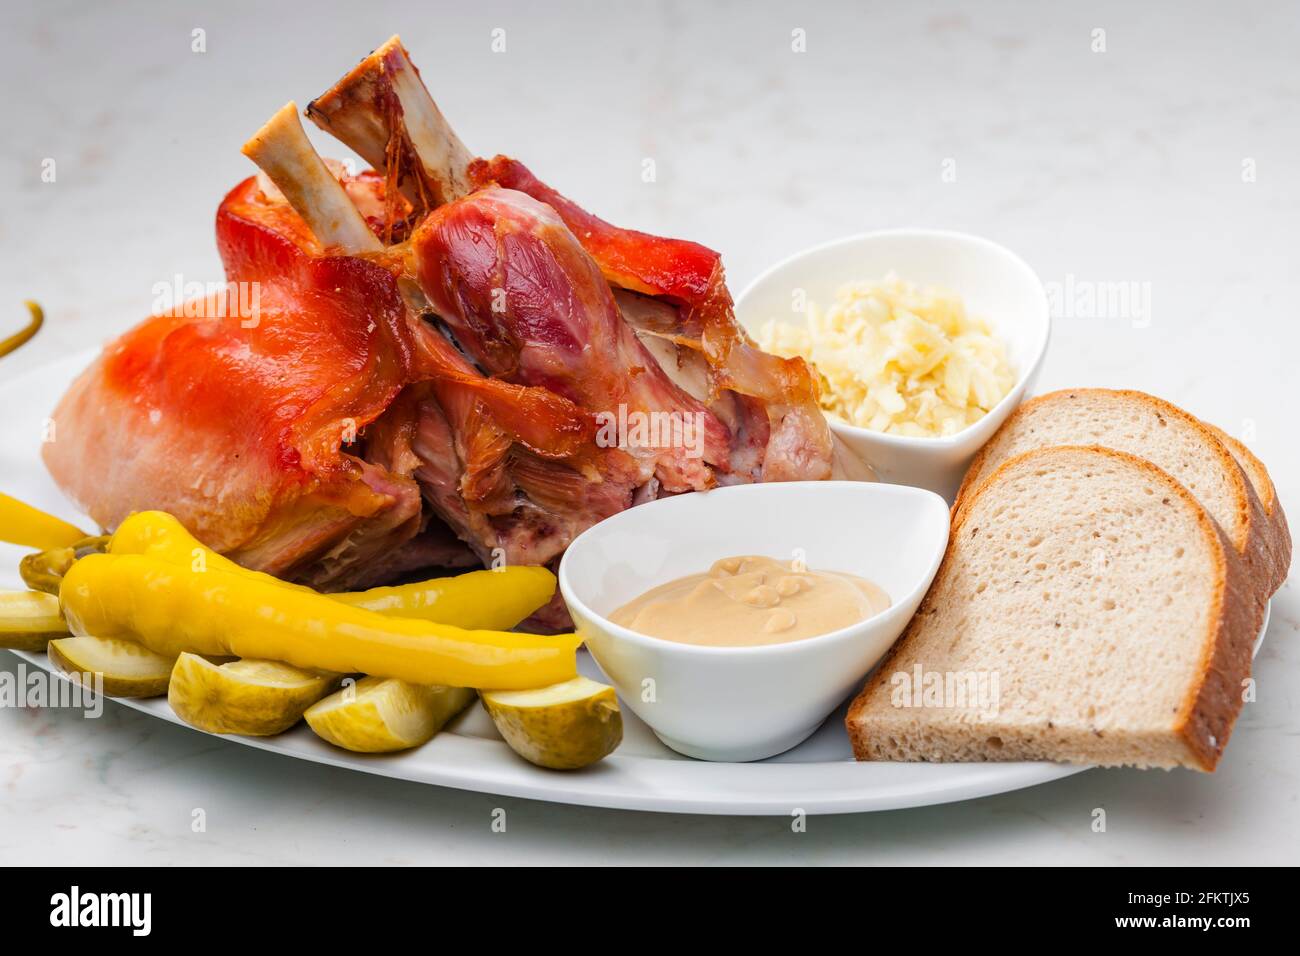 rodilla de cerdo asada con verduras, pan y mostaza Fotografía de stock -  Alamy